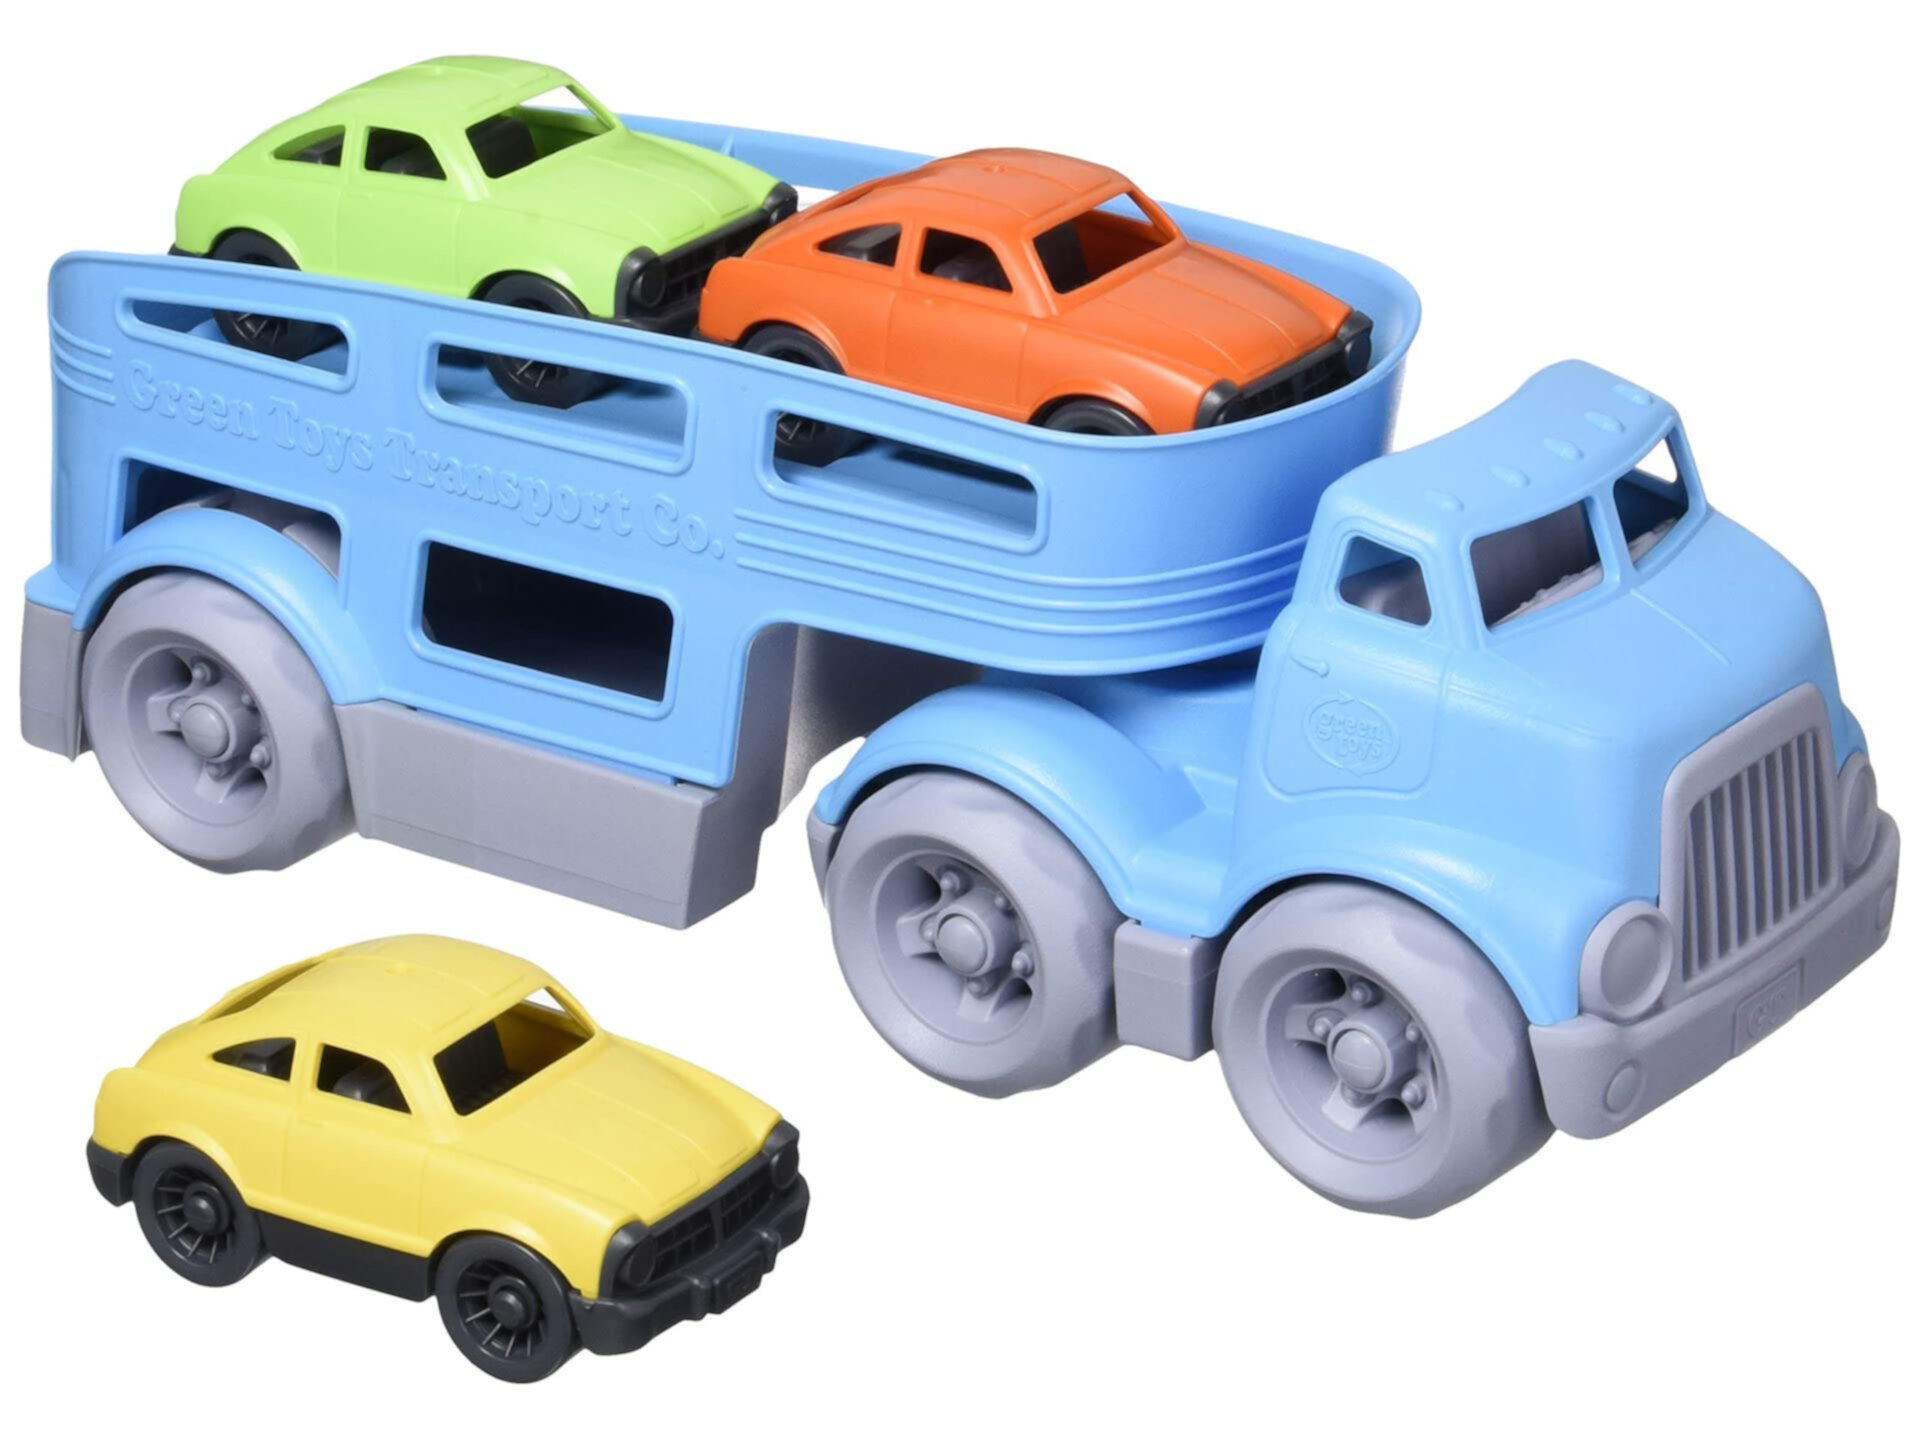 Автомобиль-перевозка Green Toys, Blue CB - ролевые игры, моторика, детские игрушечные транспортные средства. Не содержит BPA, фталатов, ПВХ. Можно мыть в посудомоечной машине, переработанный пластик, сделано в США. Green Toys